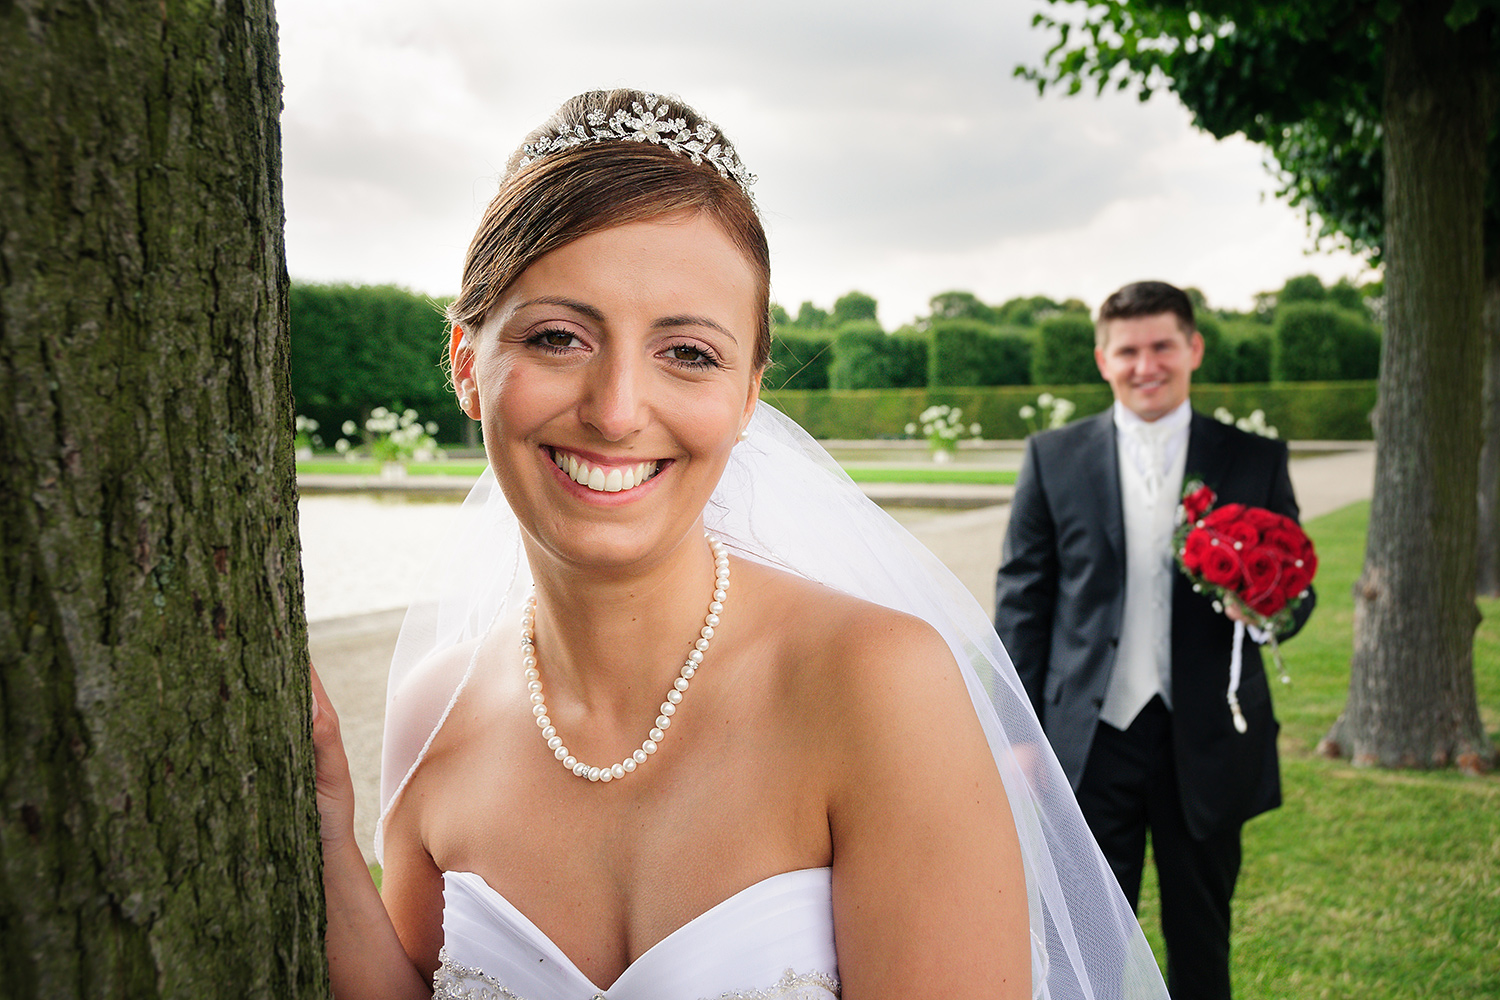 Fotograf für Hochzeiten, Brautpaar-Fotoshootings und Gruppenfotos in Hannover